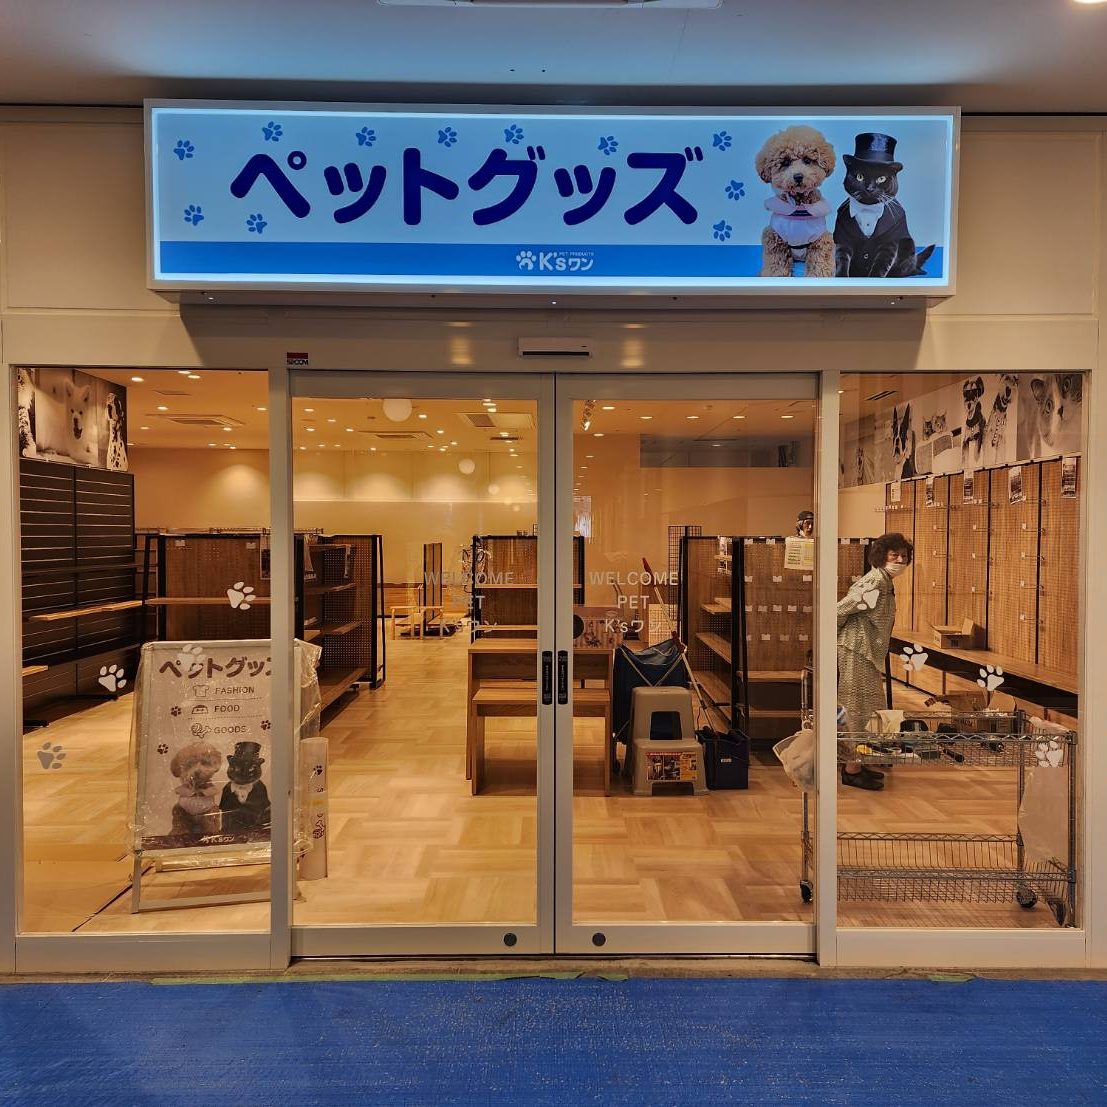 ペットグッズK’sワン 曽根崎店様の施工事例